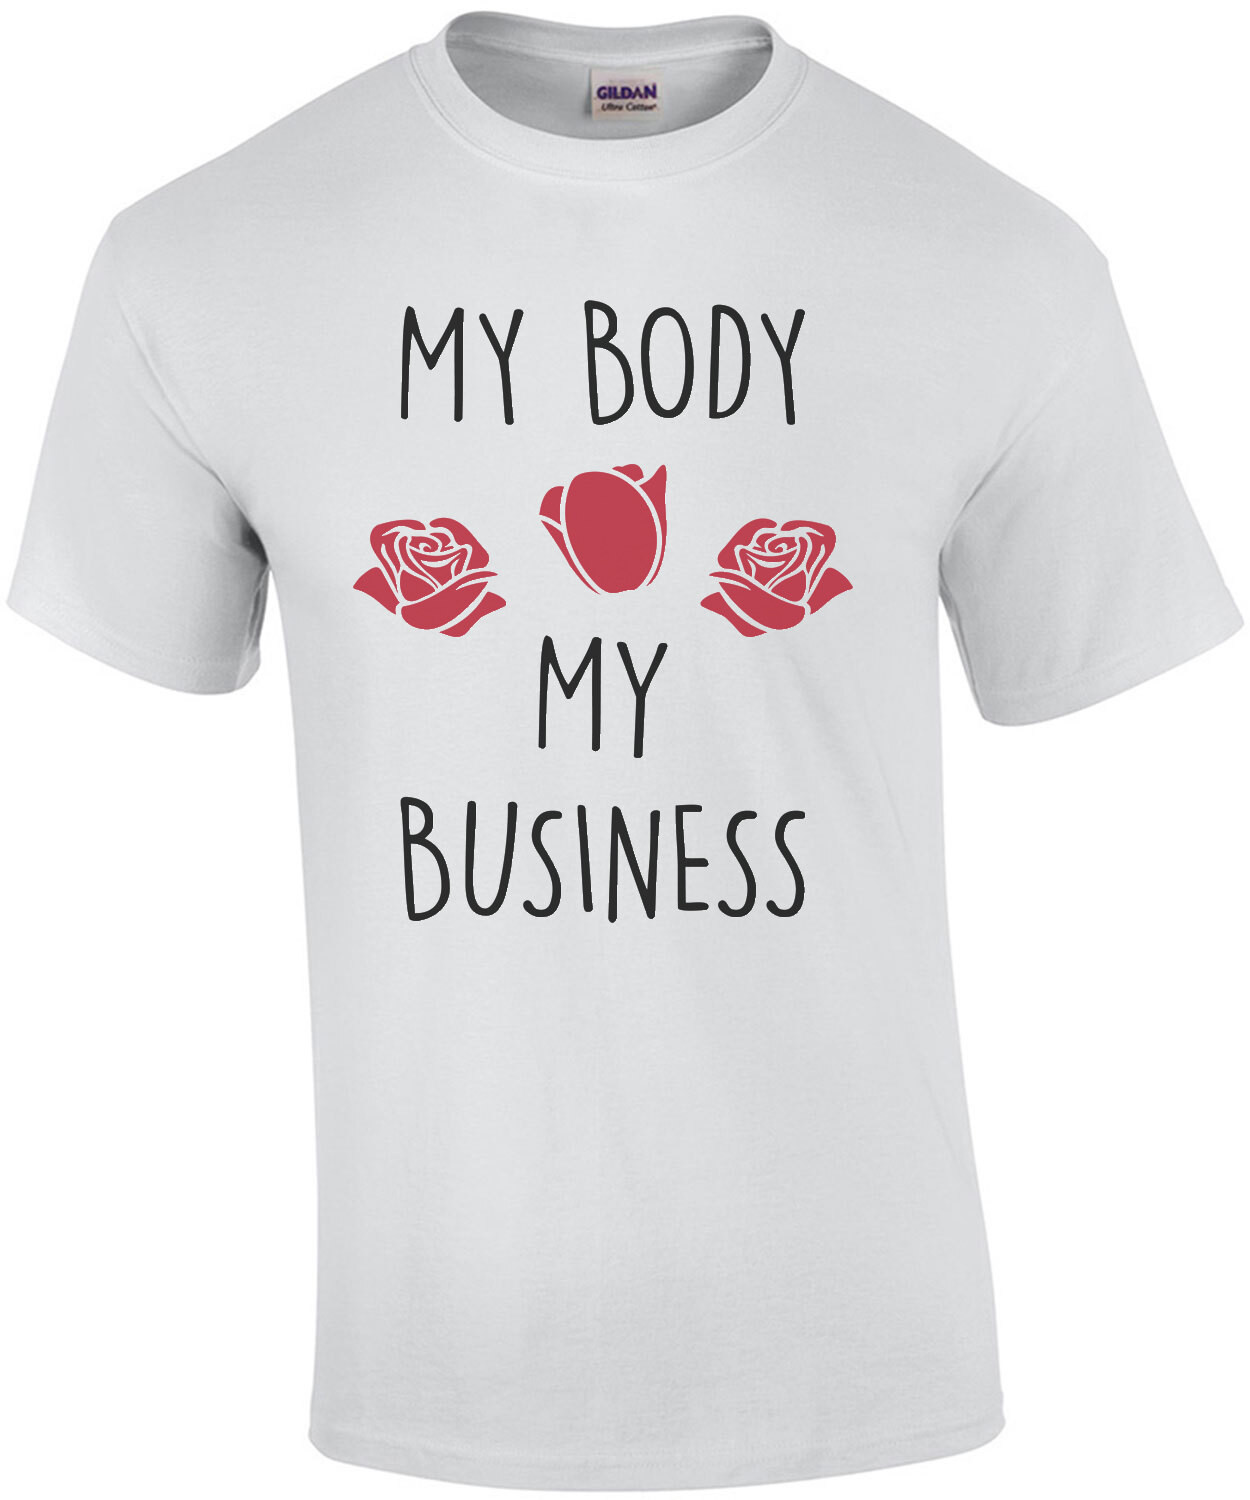 My body - My business - pro-Abortion, pro-choice T-Shirt